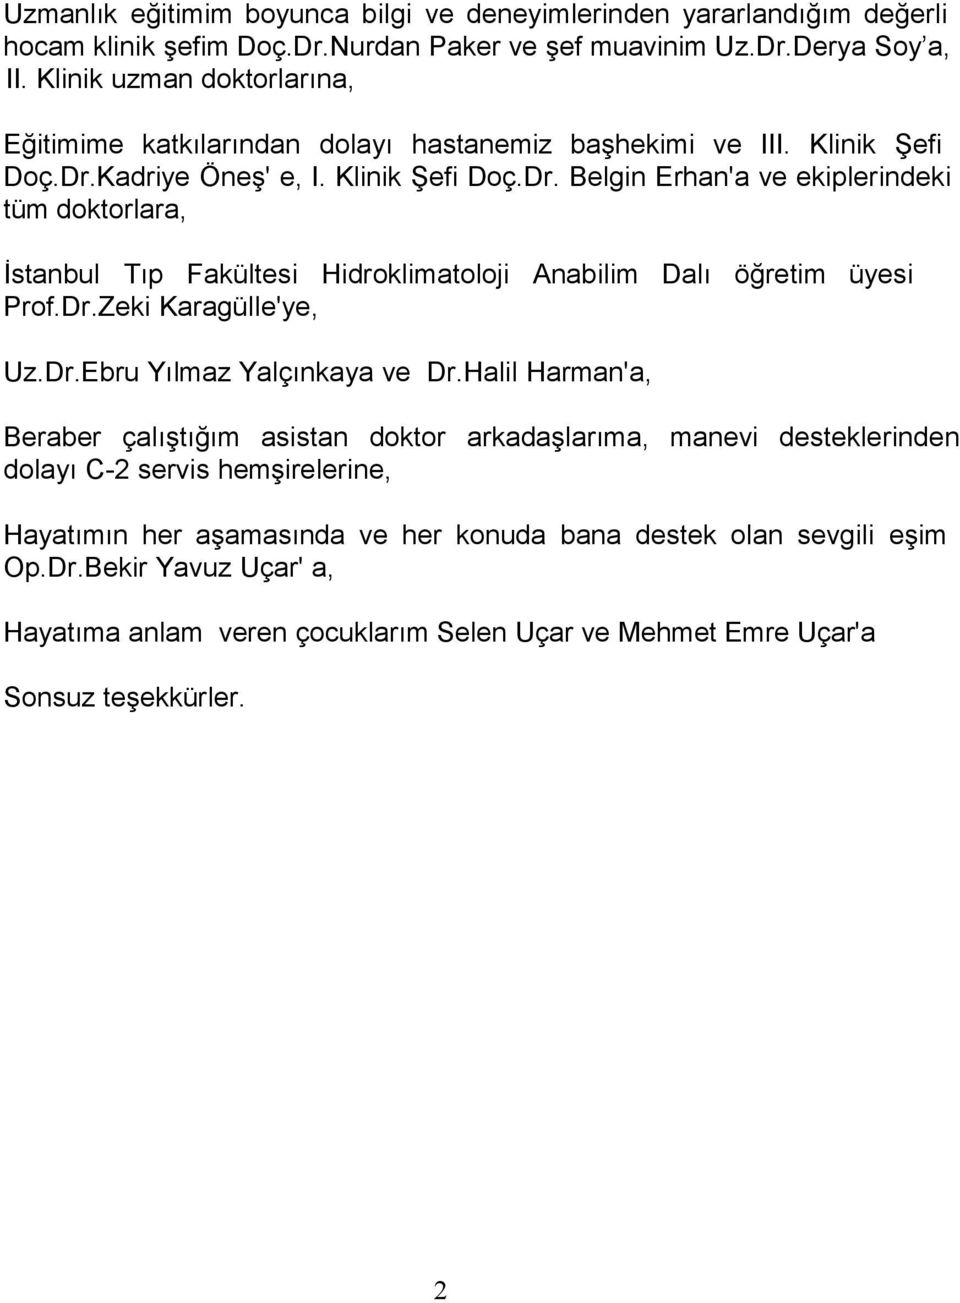 Kadriye Öneş' e, I. Klinik Şefi Doç.Dr. Belgin Erhan'a ve ekiplerindeki tüm doktorlara, İstanbul Tıp Fakültesi Hidroklimatoloji Anabilim Dalı öğretim üyesi Prof.Dr.Zeki Karagülle'ye, Uz.Dr.Ebru Yılmaz Yalçınkaya ve Dr.